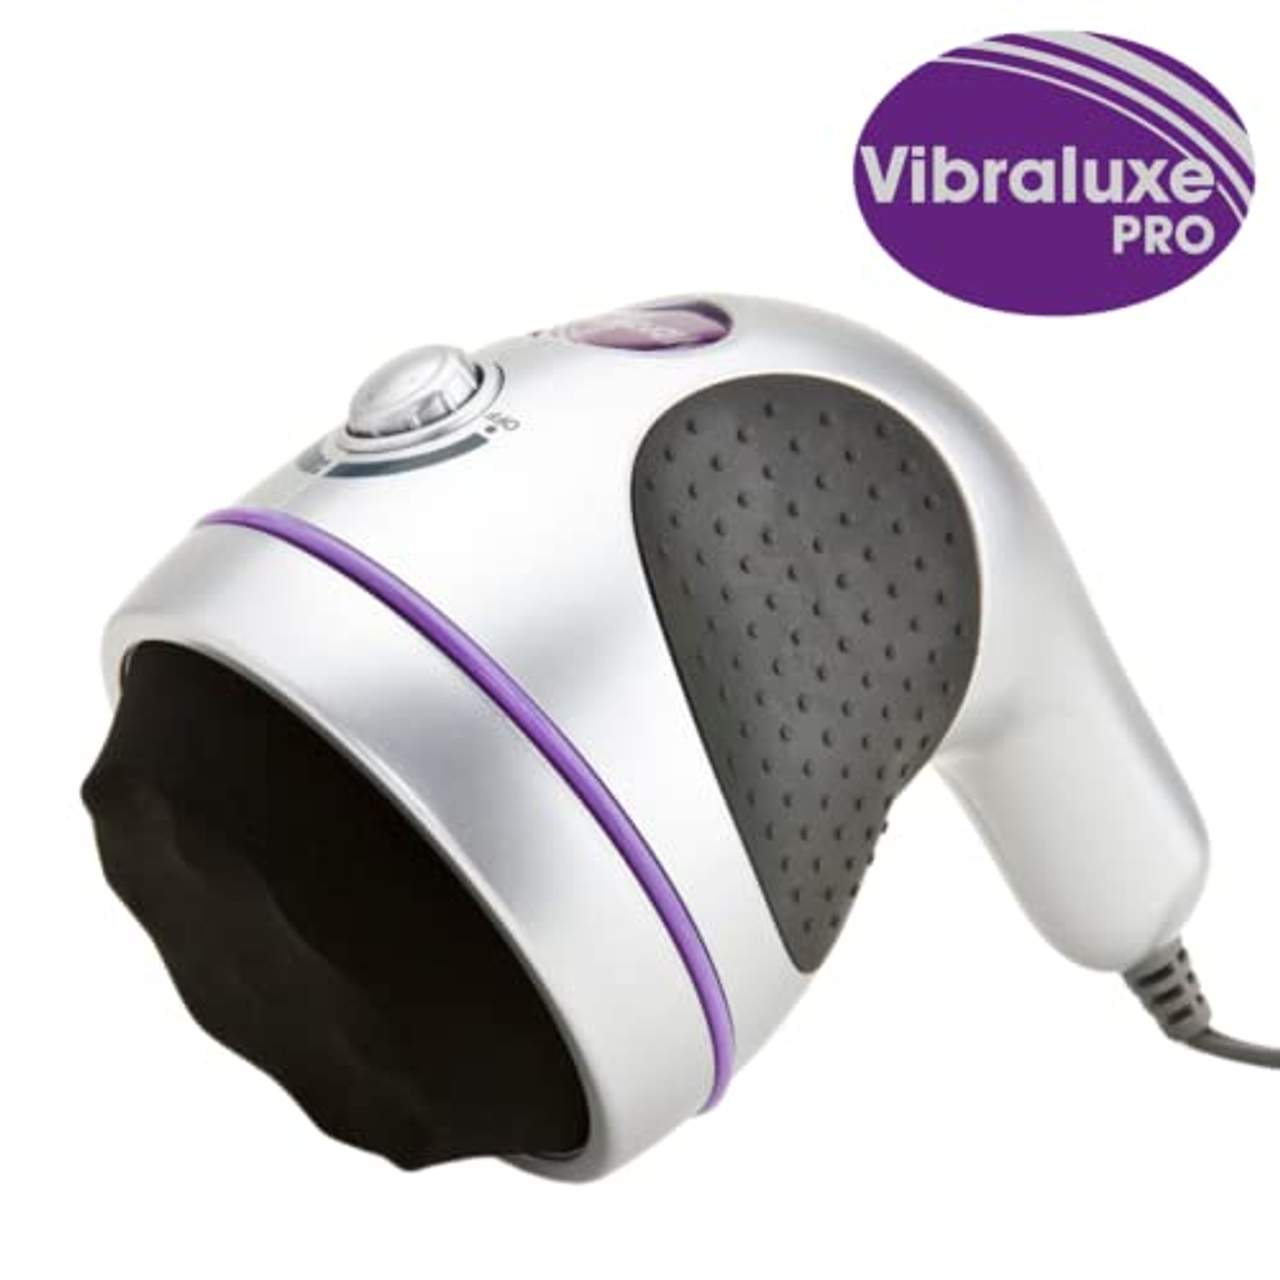 BEST DIRECT Vibraluxe PRO Elektrisch vibrierendes Massagegerät